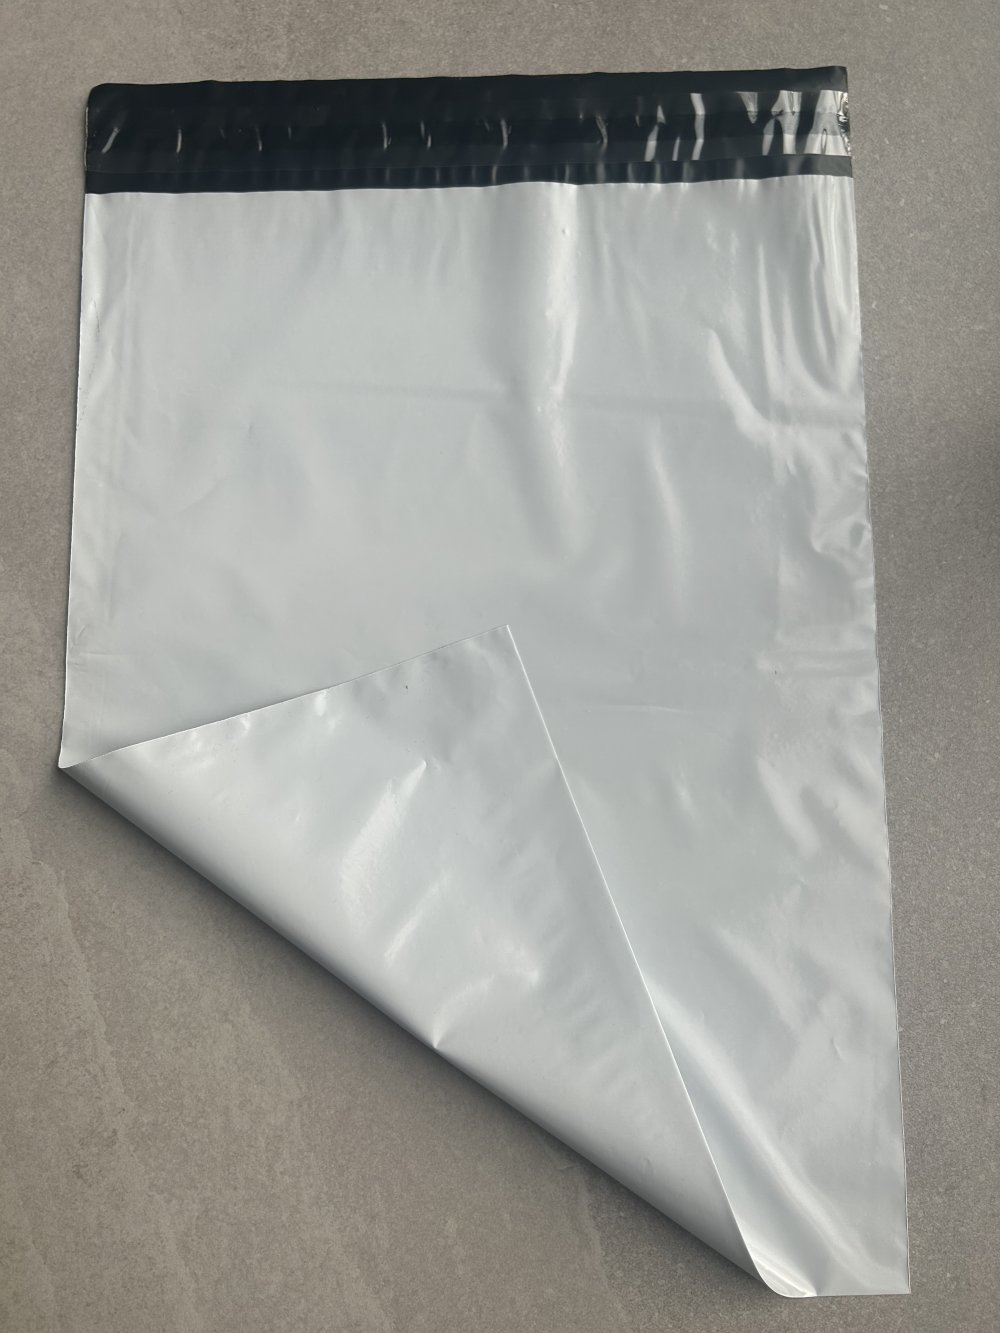 Enveloppe plastique 250mmx360 mm sachet d'envoie vêtement sac d'expédition  sac d'emballage enveloppe vinted lot de 10 - Un grand marché